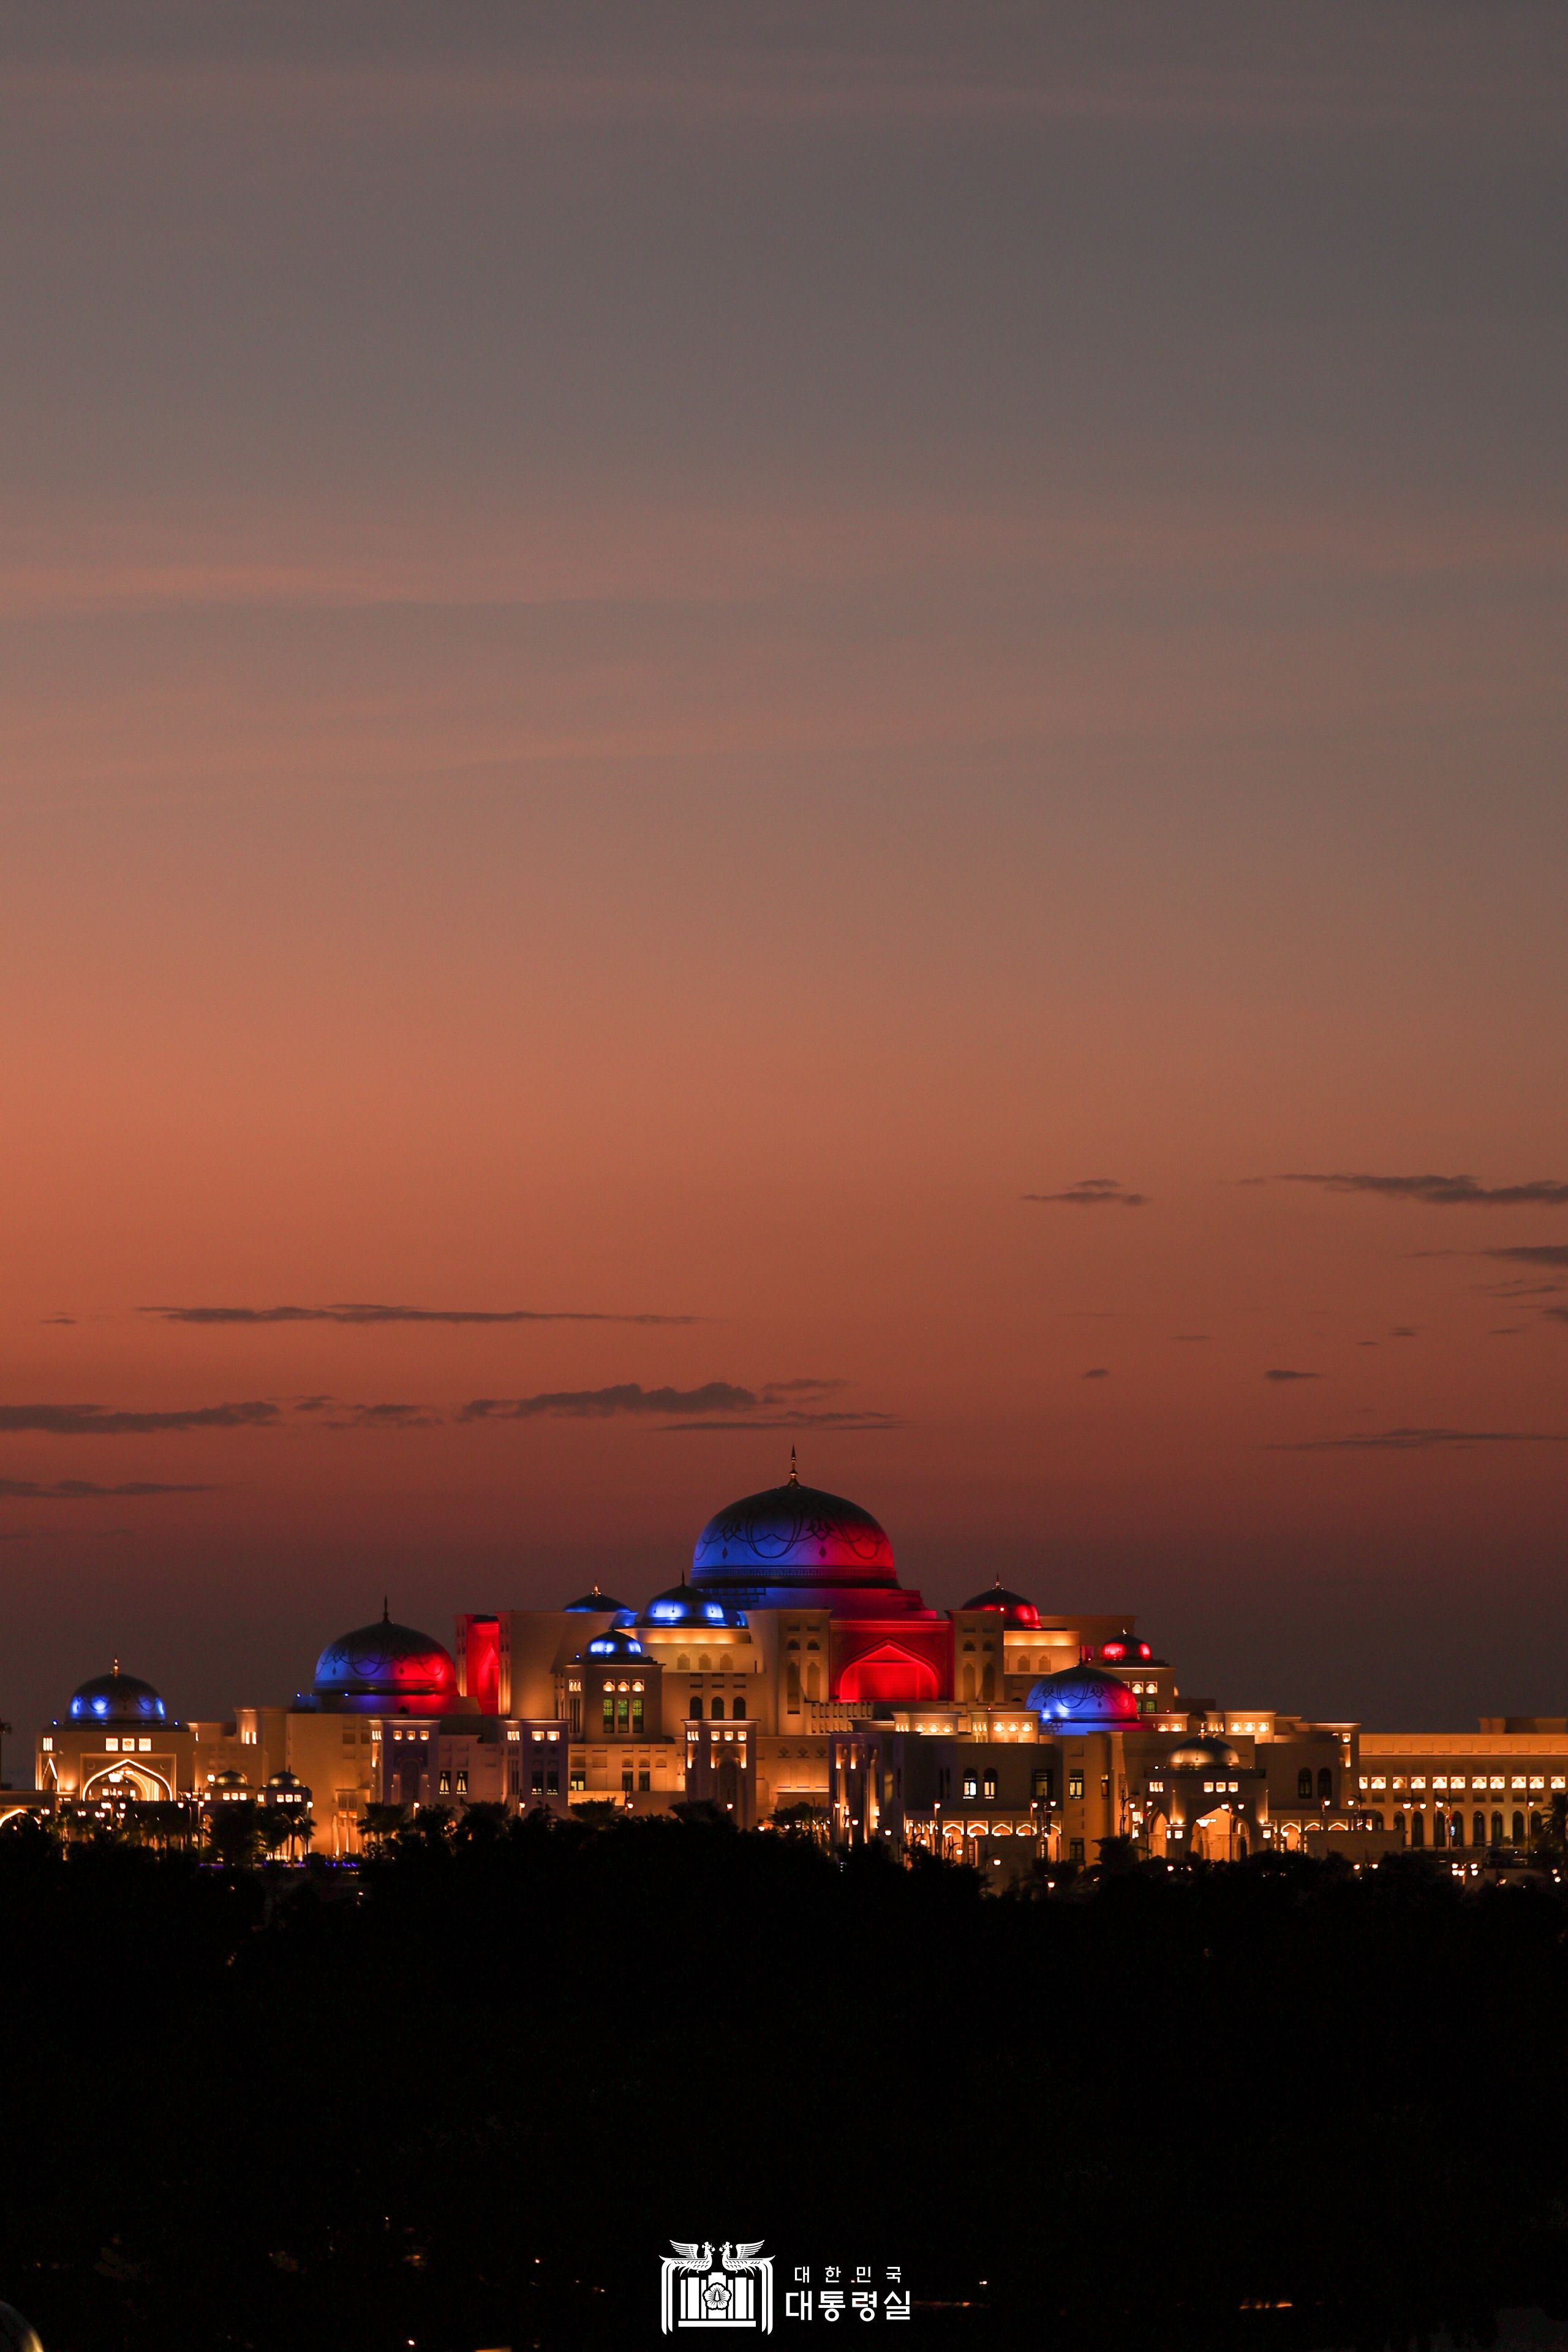 태극 문양 조명으로 빛나는 UAE 대통령궁